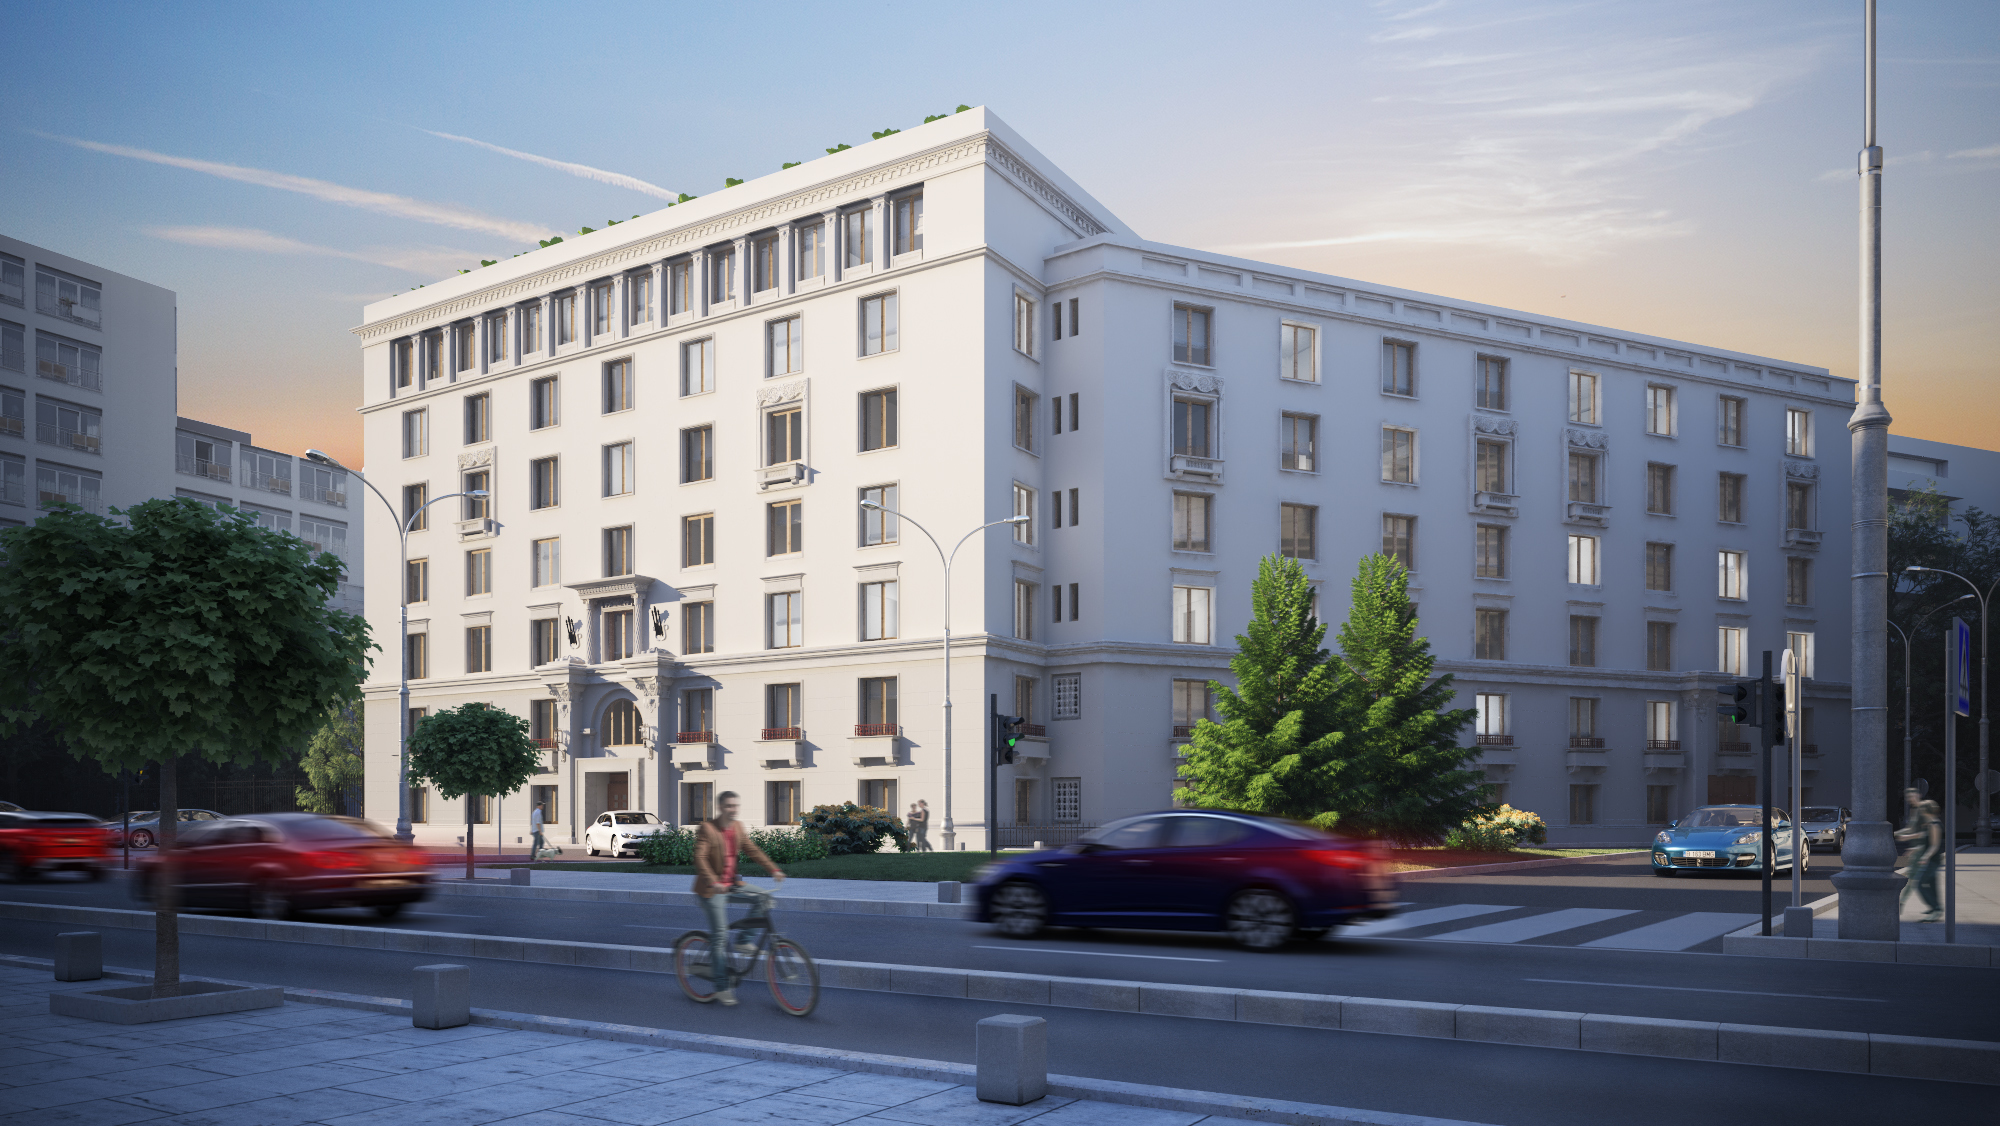 Hagag continuă dezvoltările pe Calea Victoriei şi are în plan să investească 20 mil. euro în Palatul Ştirbei după ce a primit certificatul de urbanism